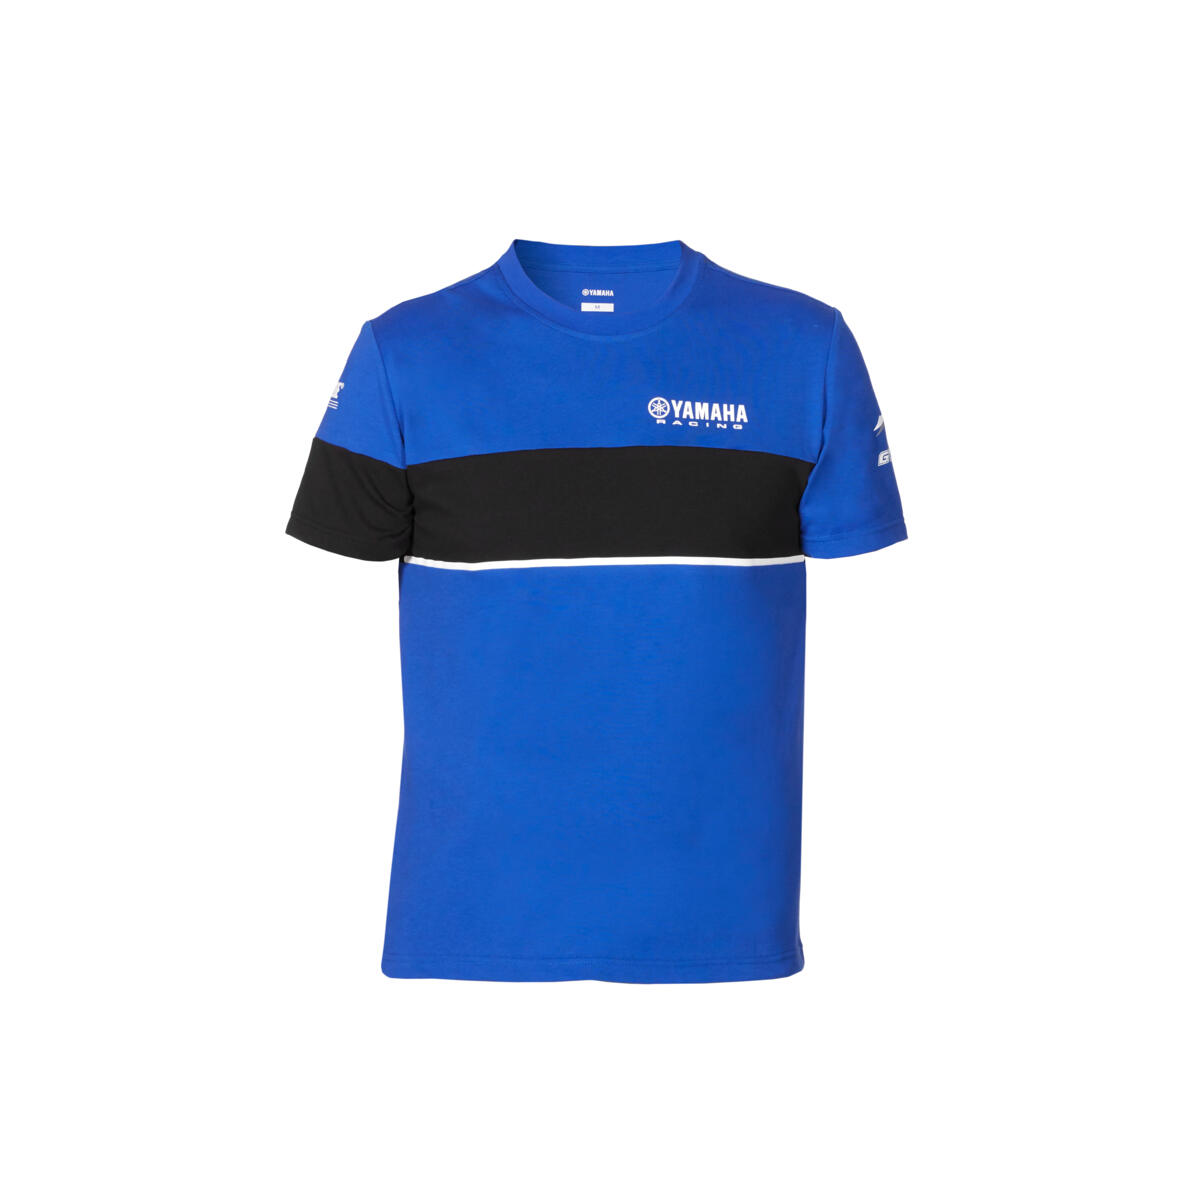 Genuine Yamaha Paddock Blue T-Shirt Mens 2020 Jetski Racing